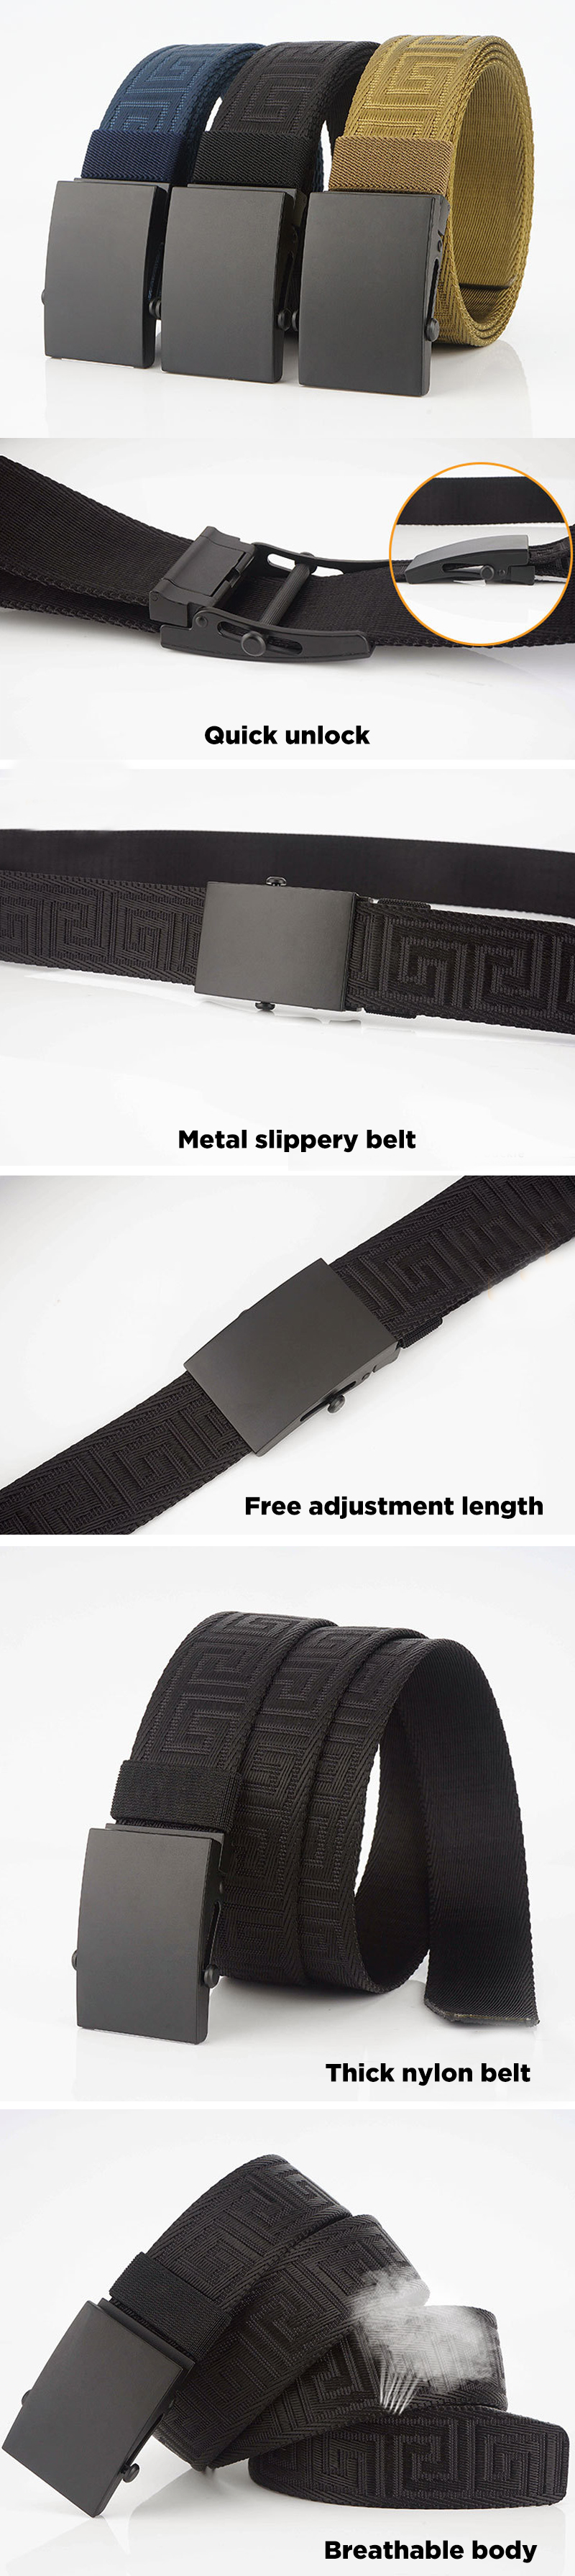 120cm-AWMN-SG5-Roller-Buckle-Nylon-Tactical-Belt-Outdoor-Leisure-Belt-for-Man-Women-Waistband-1532028-1